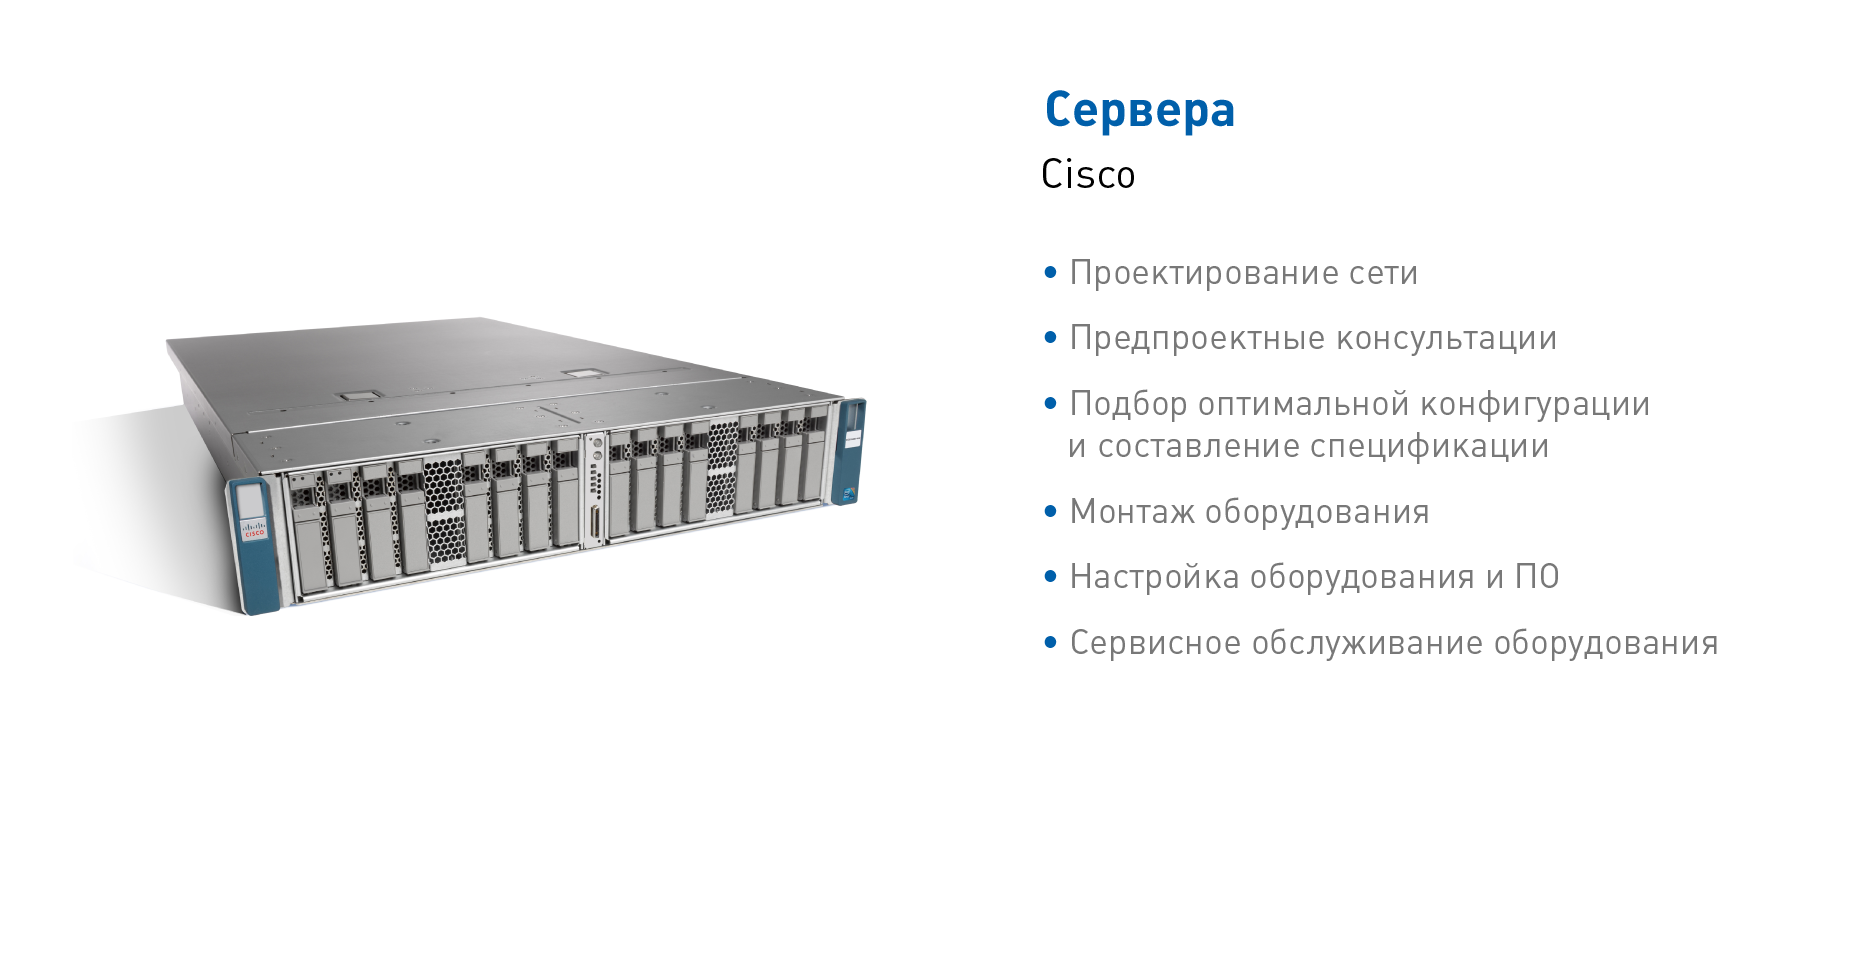 Сервера Cisco